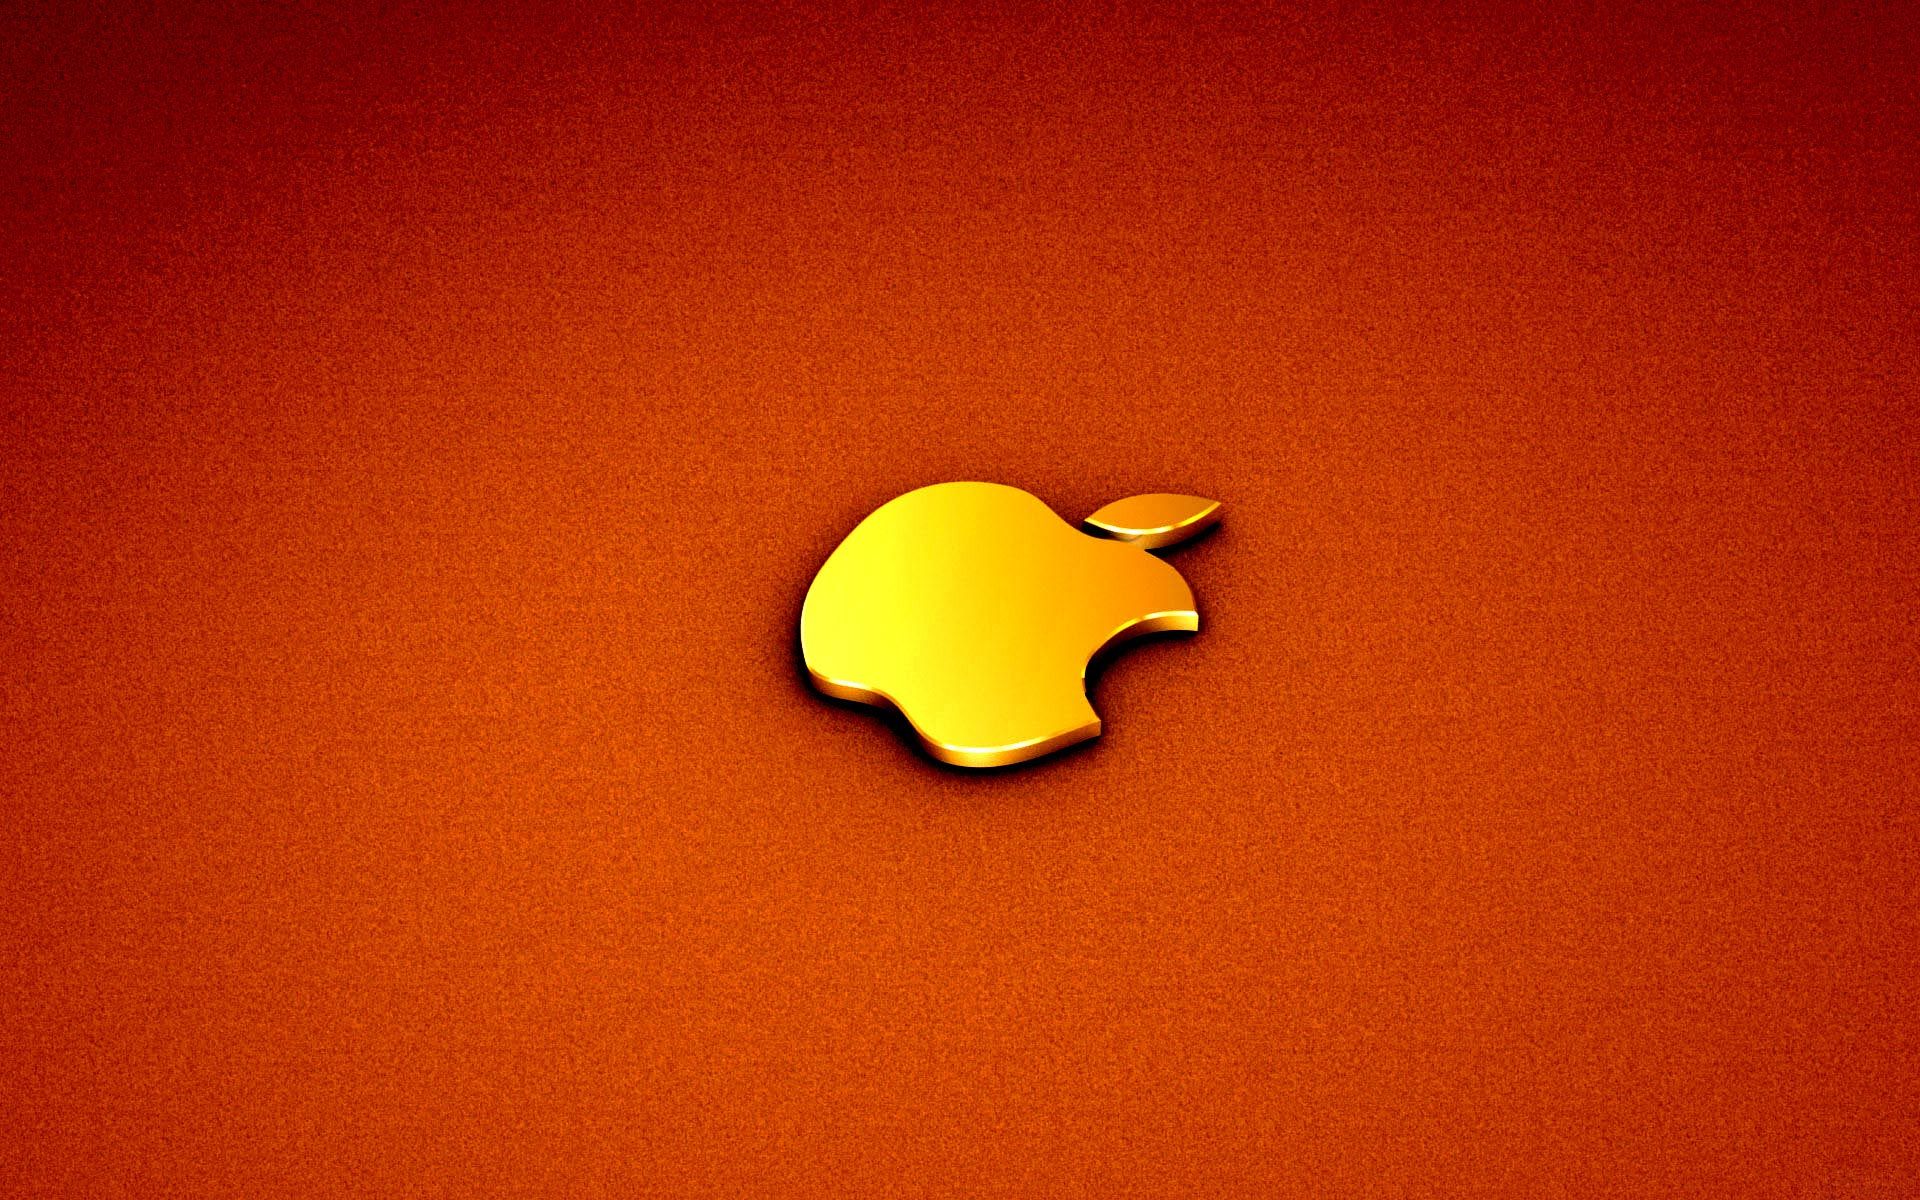 Desktop Wallpaper · Gallery · Computers · Golden Apple MacBook Pro ...